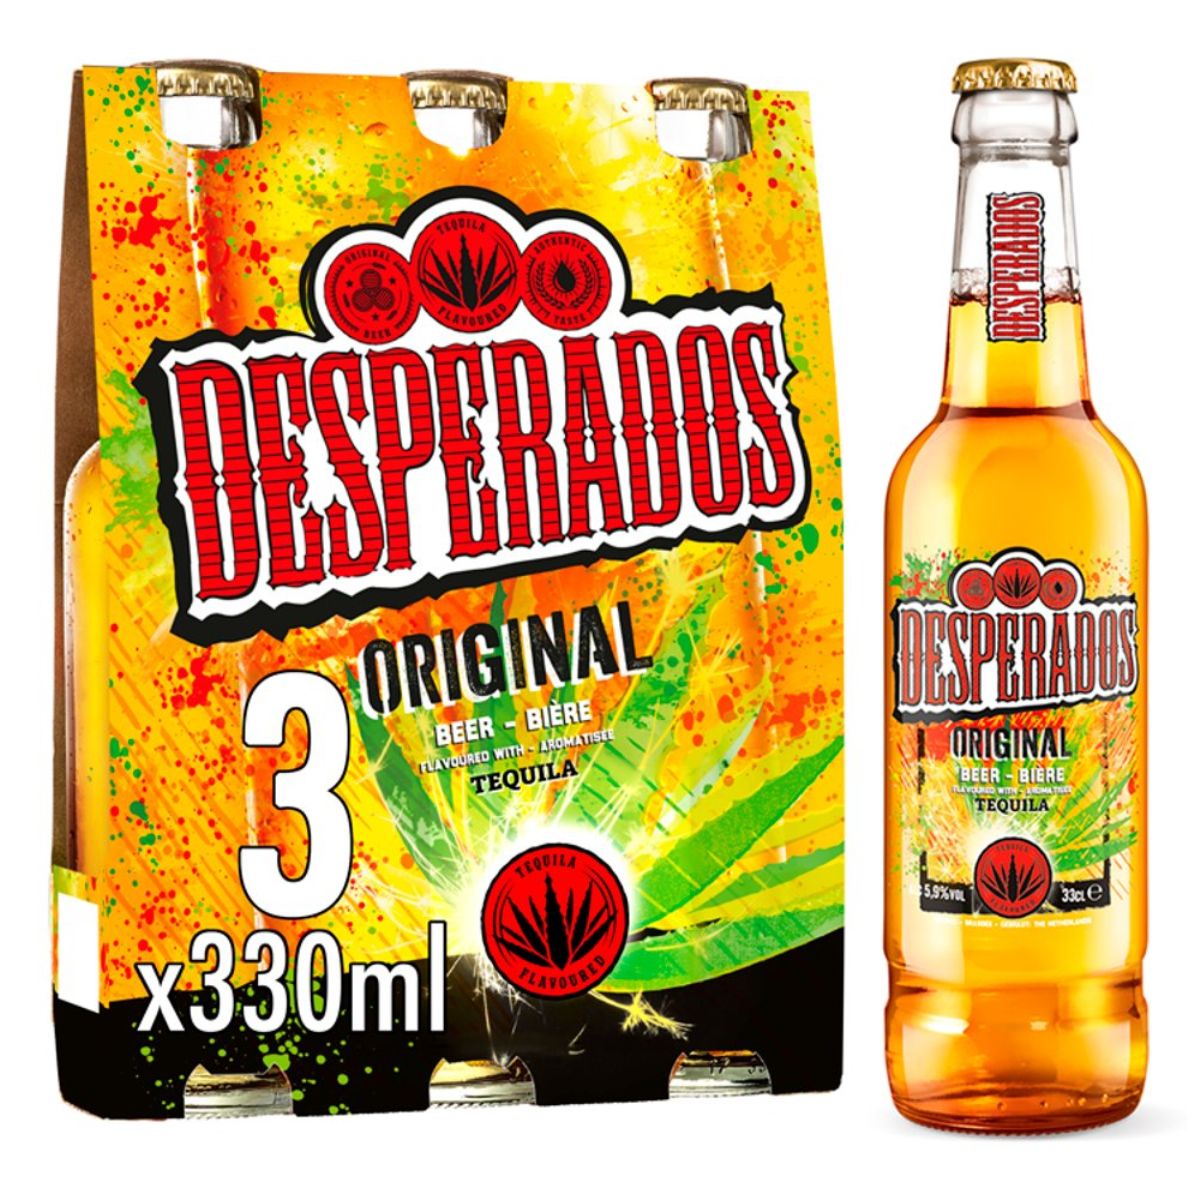 Desperados - Tequila Flavoured Lager Beer Bottle (5.9% ABV) - 3 x 330ml original 3 x 3 x 30ml.